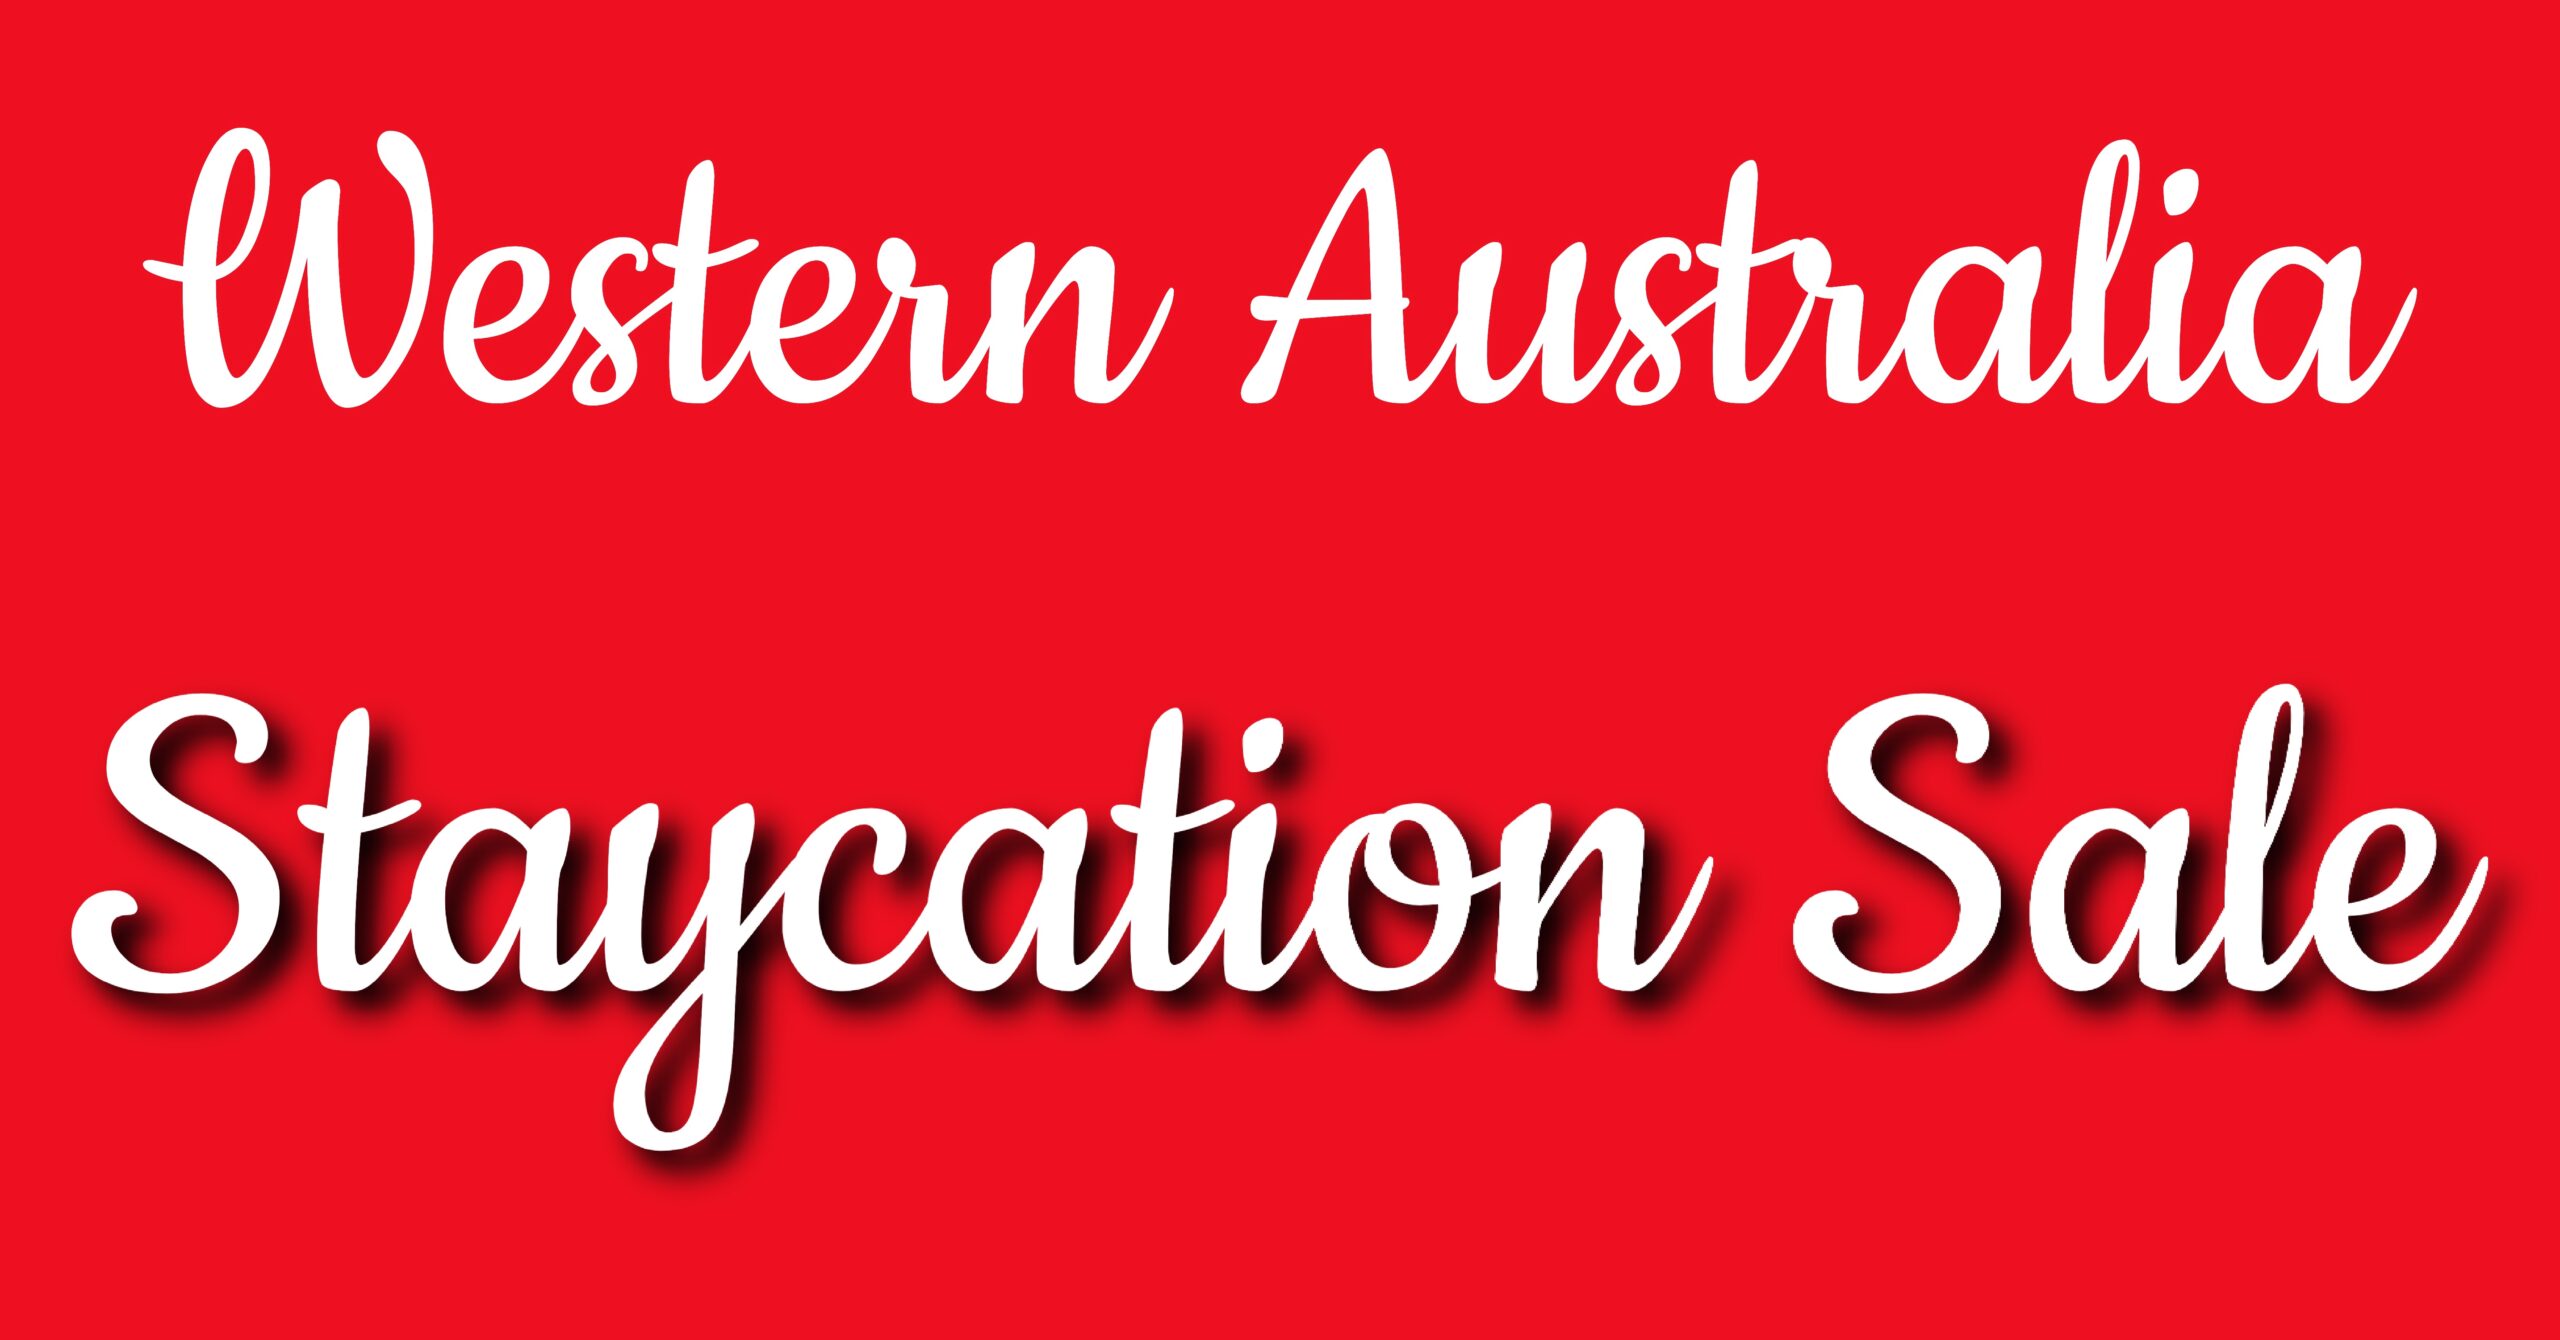 Aus World Travel Western Australia Staycation Sale